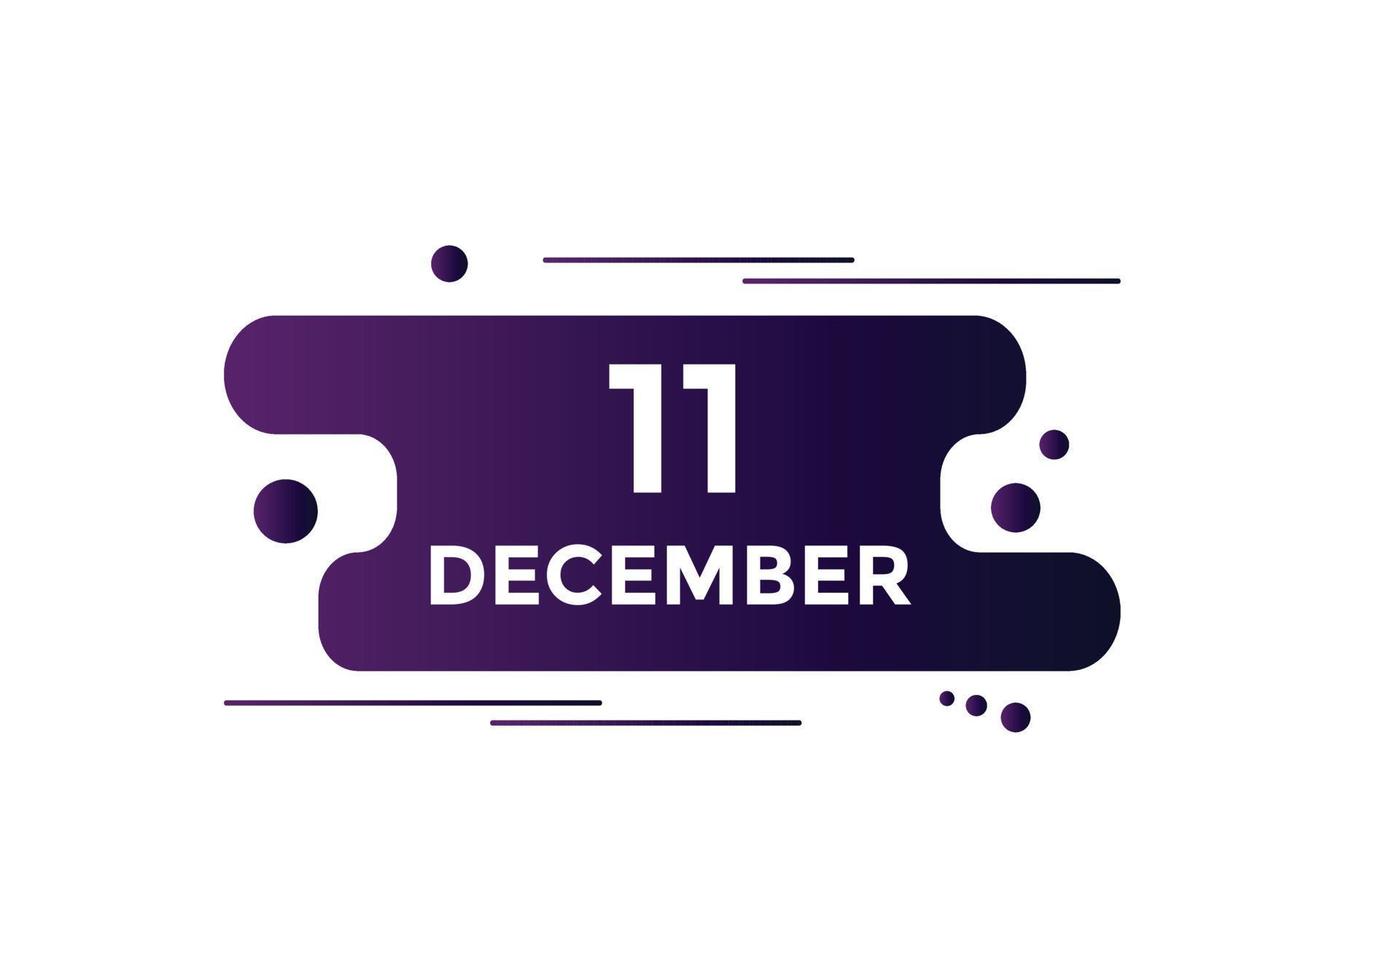 dicembre 11 calendario promemoria. 11 ° dicembre quotidiano calendario icona modello. calendario 11 ° dicembre icona design modello. vettore illustrazione